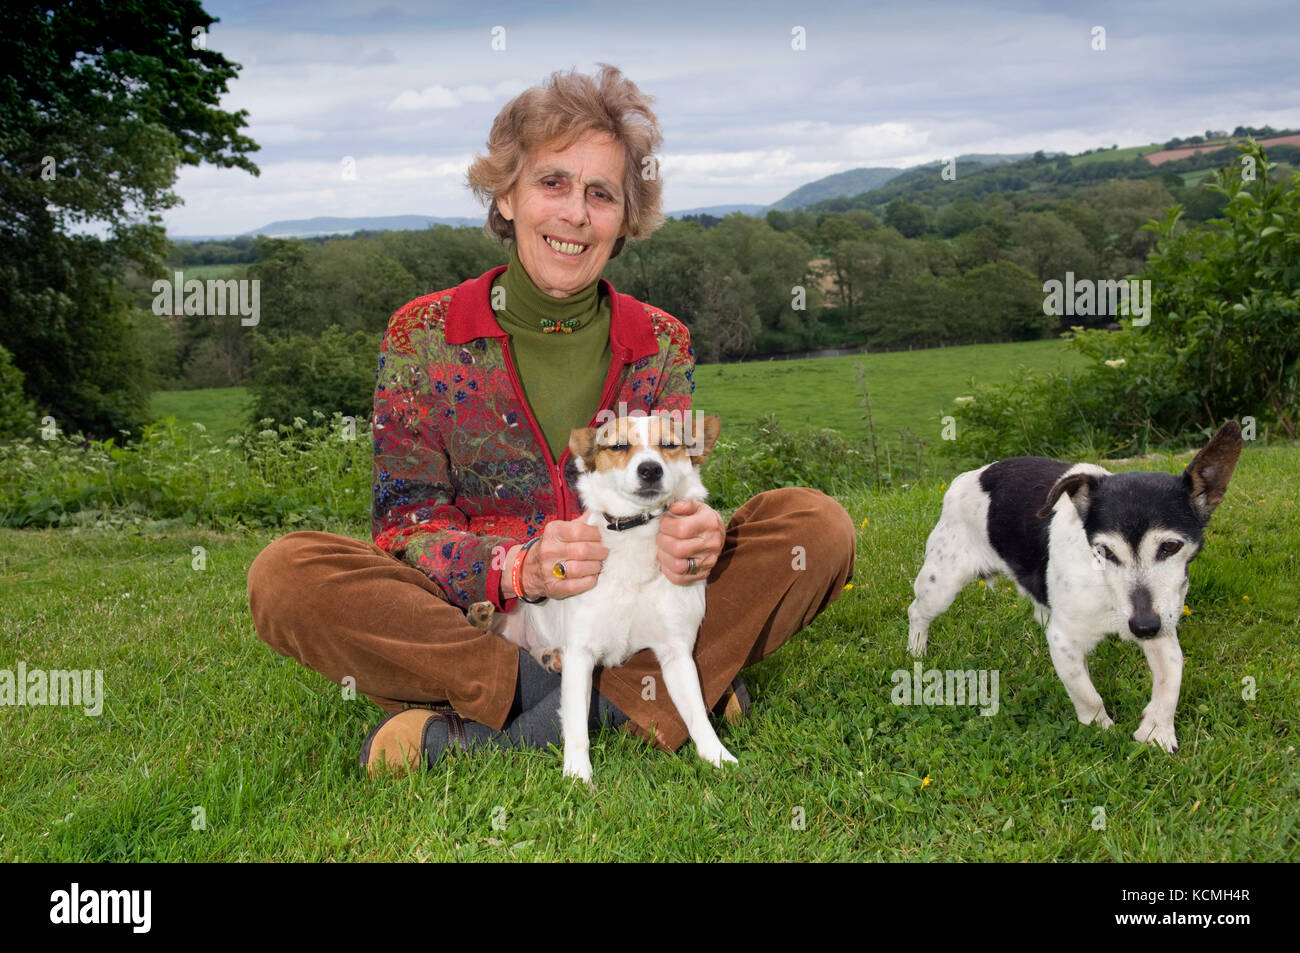 Revel Guest, Filmemacher, Autor, Journalist und Vorsitzende der Hay Festival (Standort hinter einige Bilder gesehen) Stockfoto